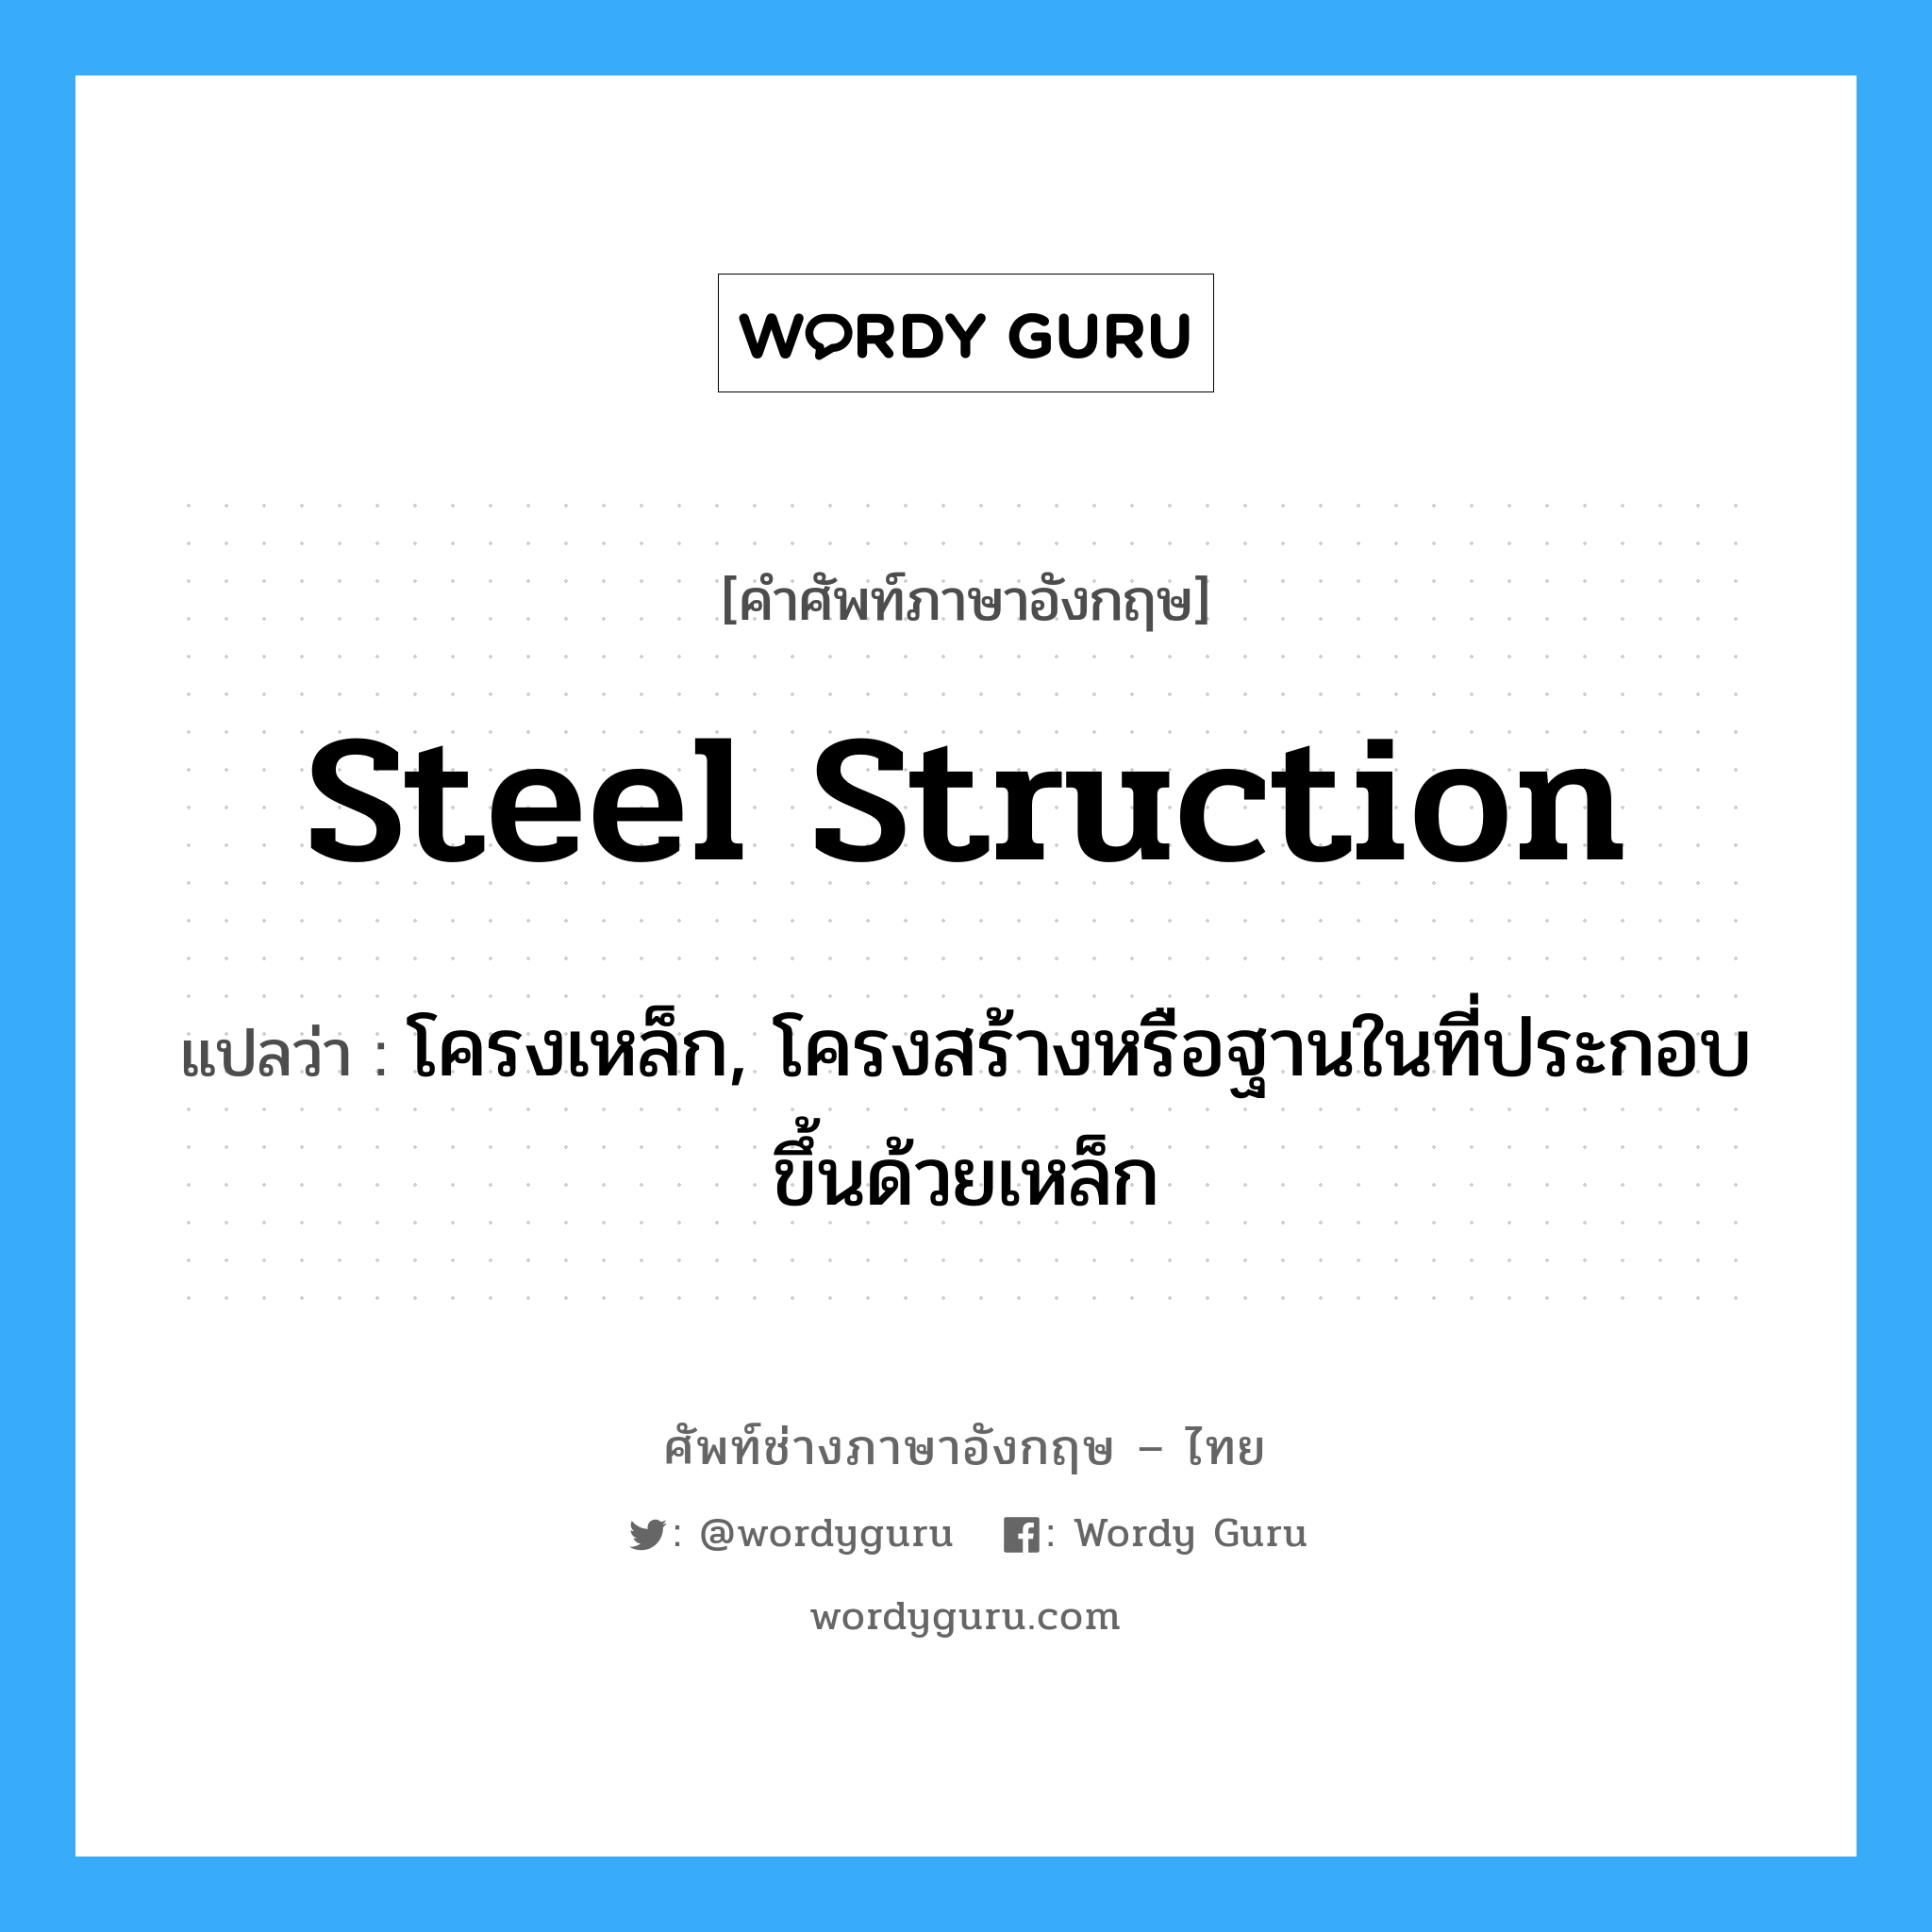 steel struction แปลว่า?, คำศัพท์ช่างภาษาอังกฤษ - ไทย steel struction คำศัพท์ภาษาอังกฤษ steel struction แปลว่า โครงเหล็ก, โครงสร้างหรือฐานในที่ประกอบขึ้นด้วยเหล็ก